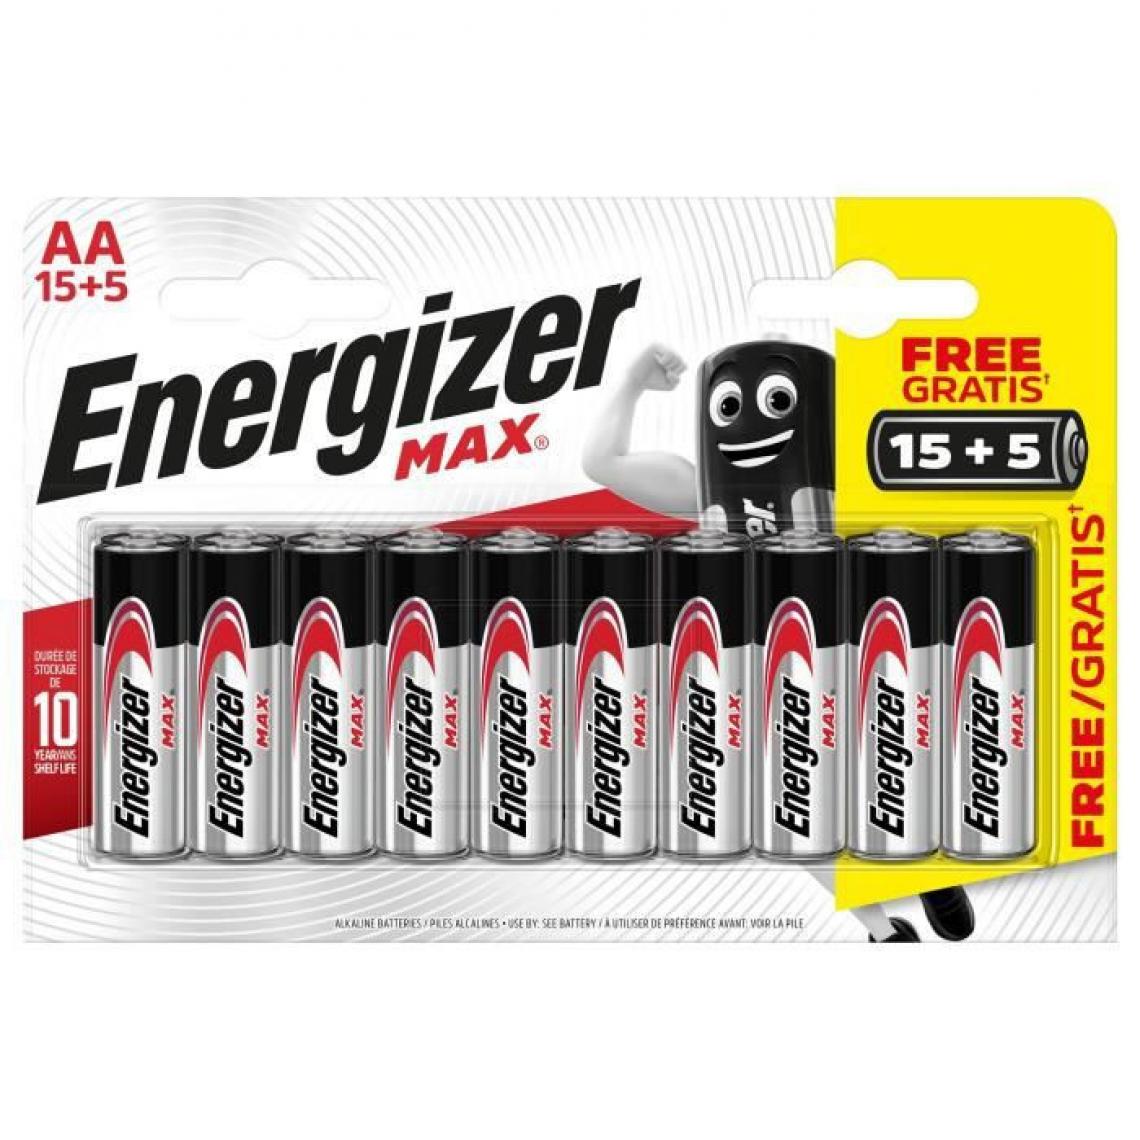 Energizer - Piles Alcalines Energizer Max AA/LR6, pack de 15+5 - Piles rechargeables